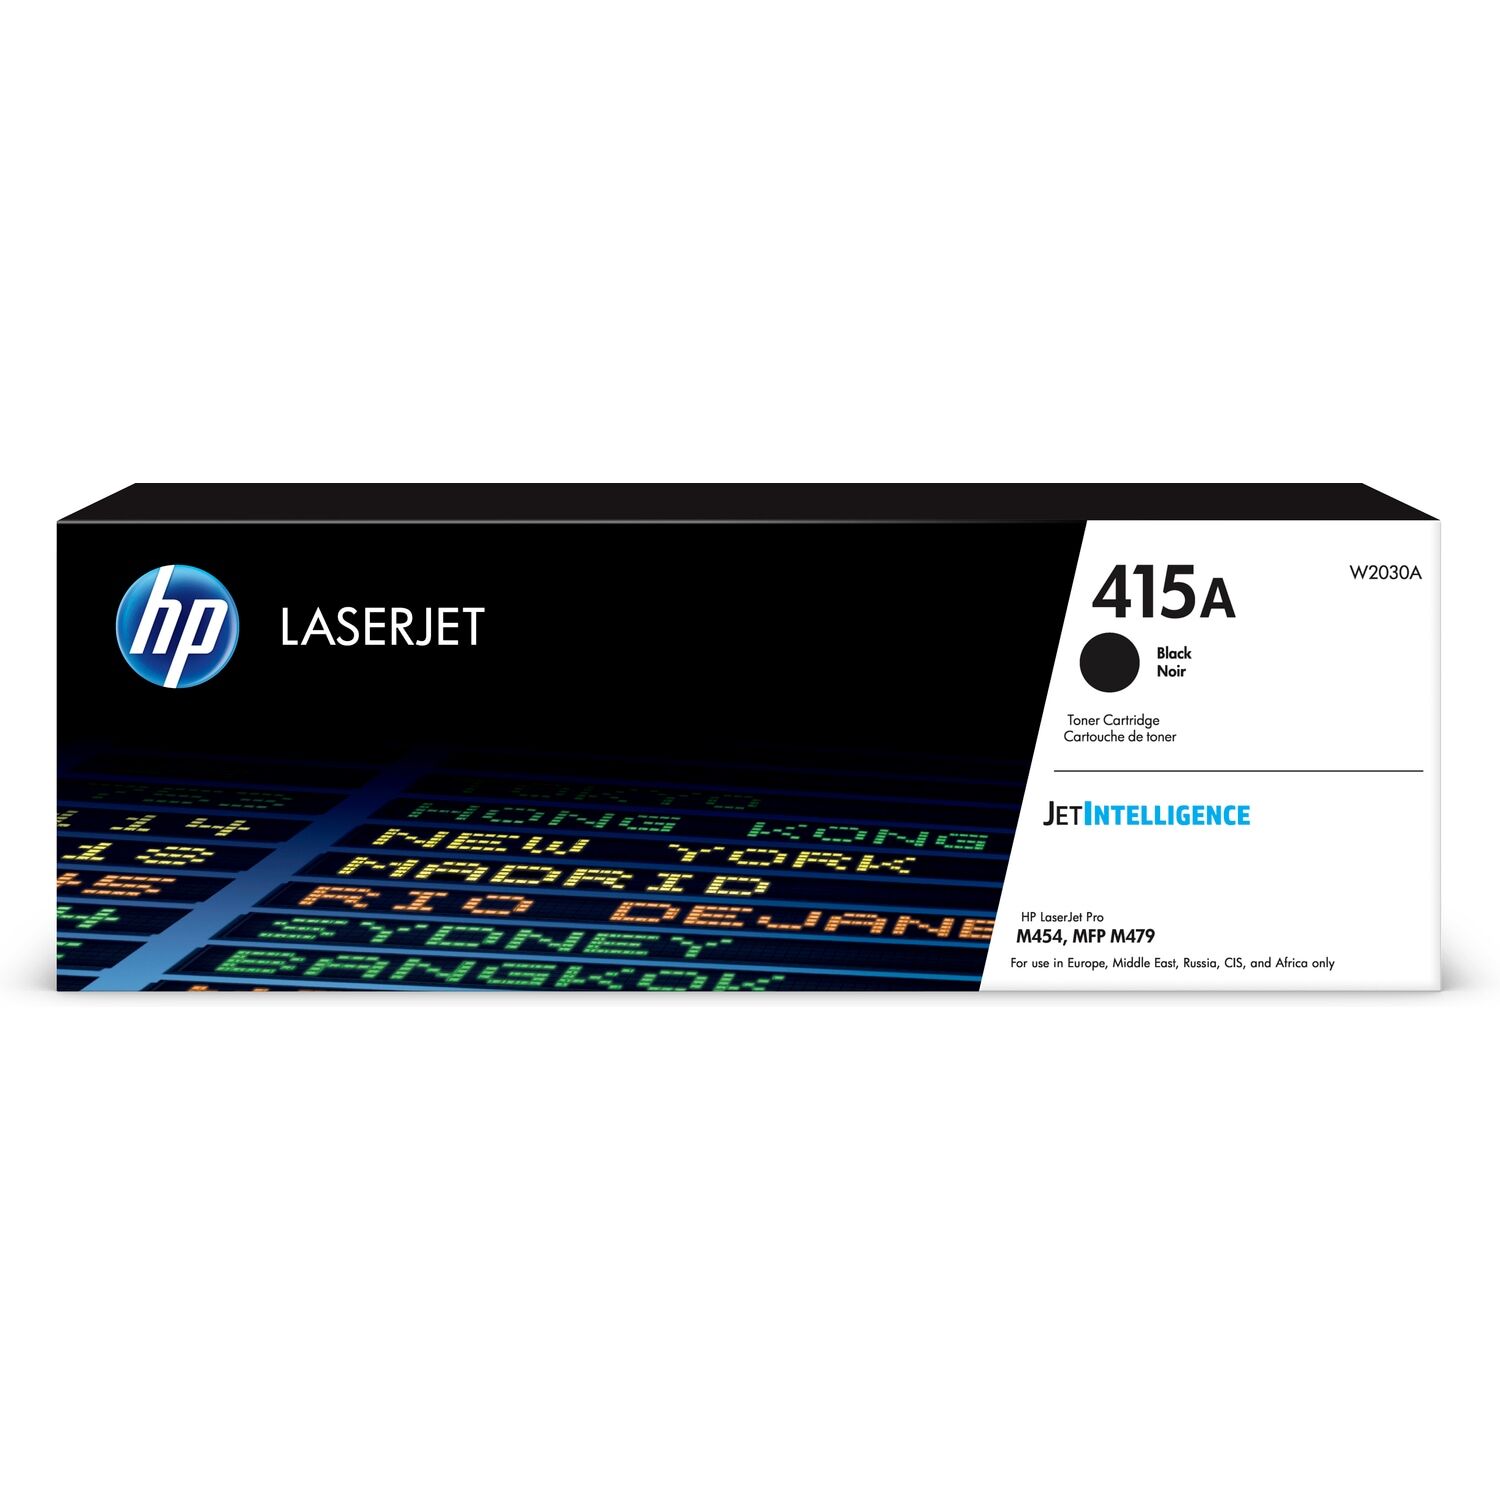 Картридж для печати HP Картридж HP 415A W2030A вид печати лазерный, цвет Черный, емкость